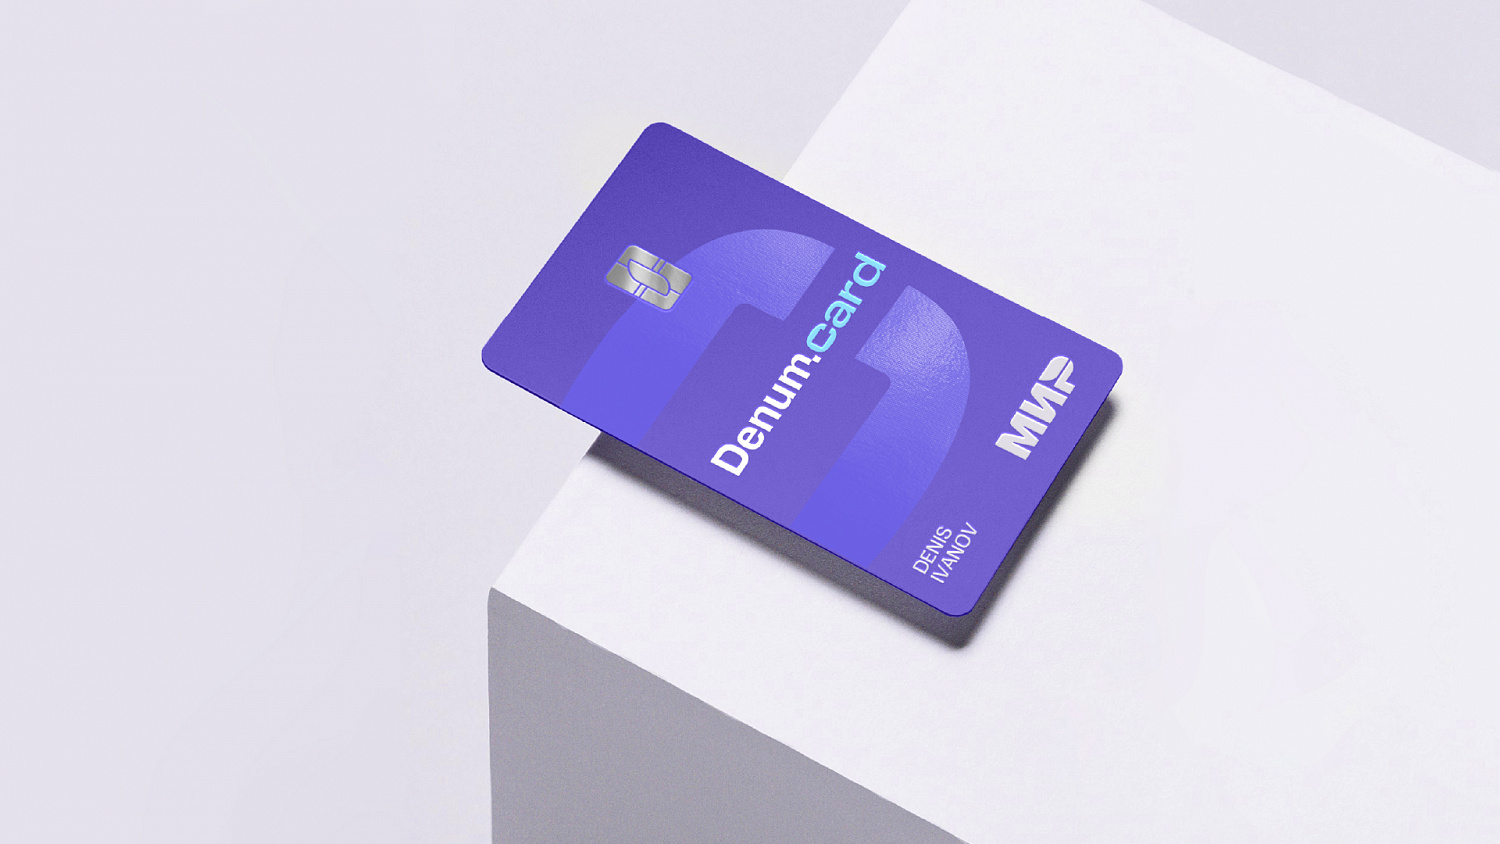 Denum card: Создание интерфейса мобильного приложения - Портфолио Depot